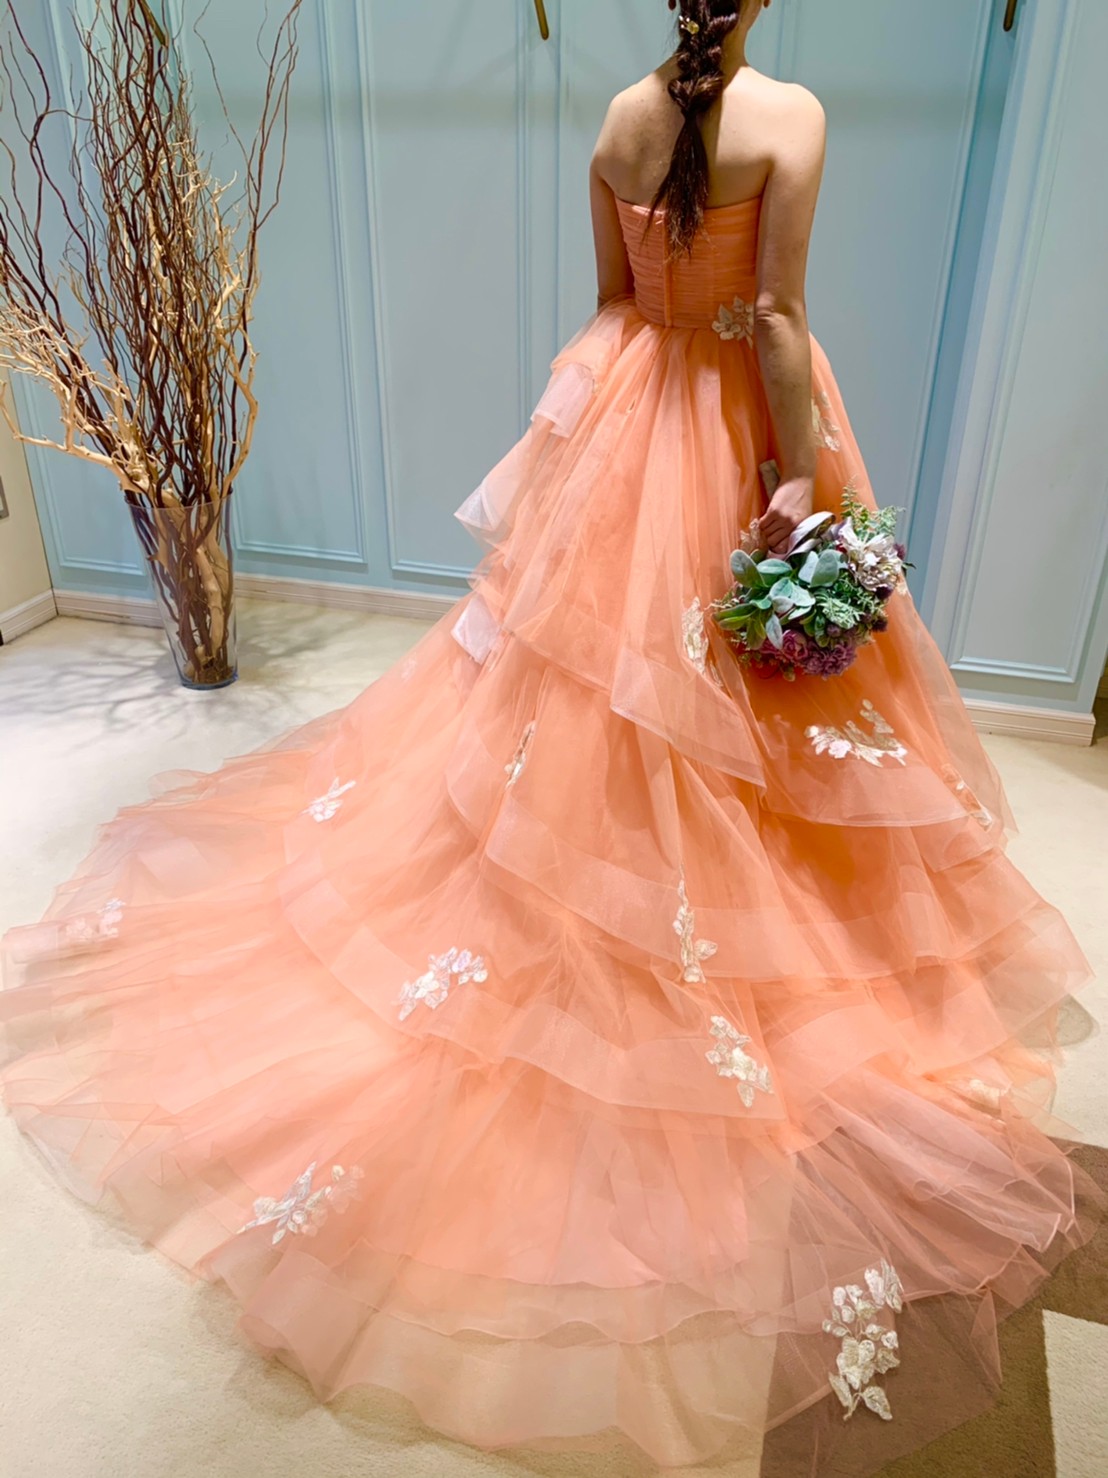 新作ドレスのご紹介＝Fiore Bianca Original Color Dress＝| ブログ 